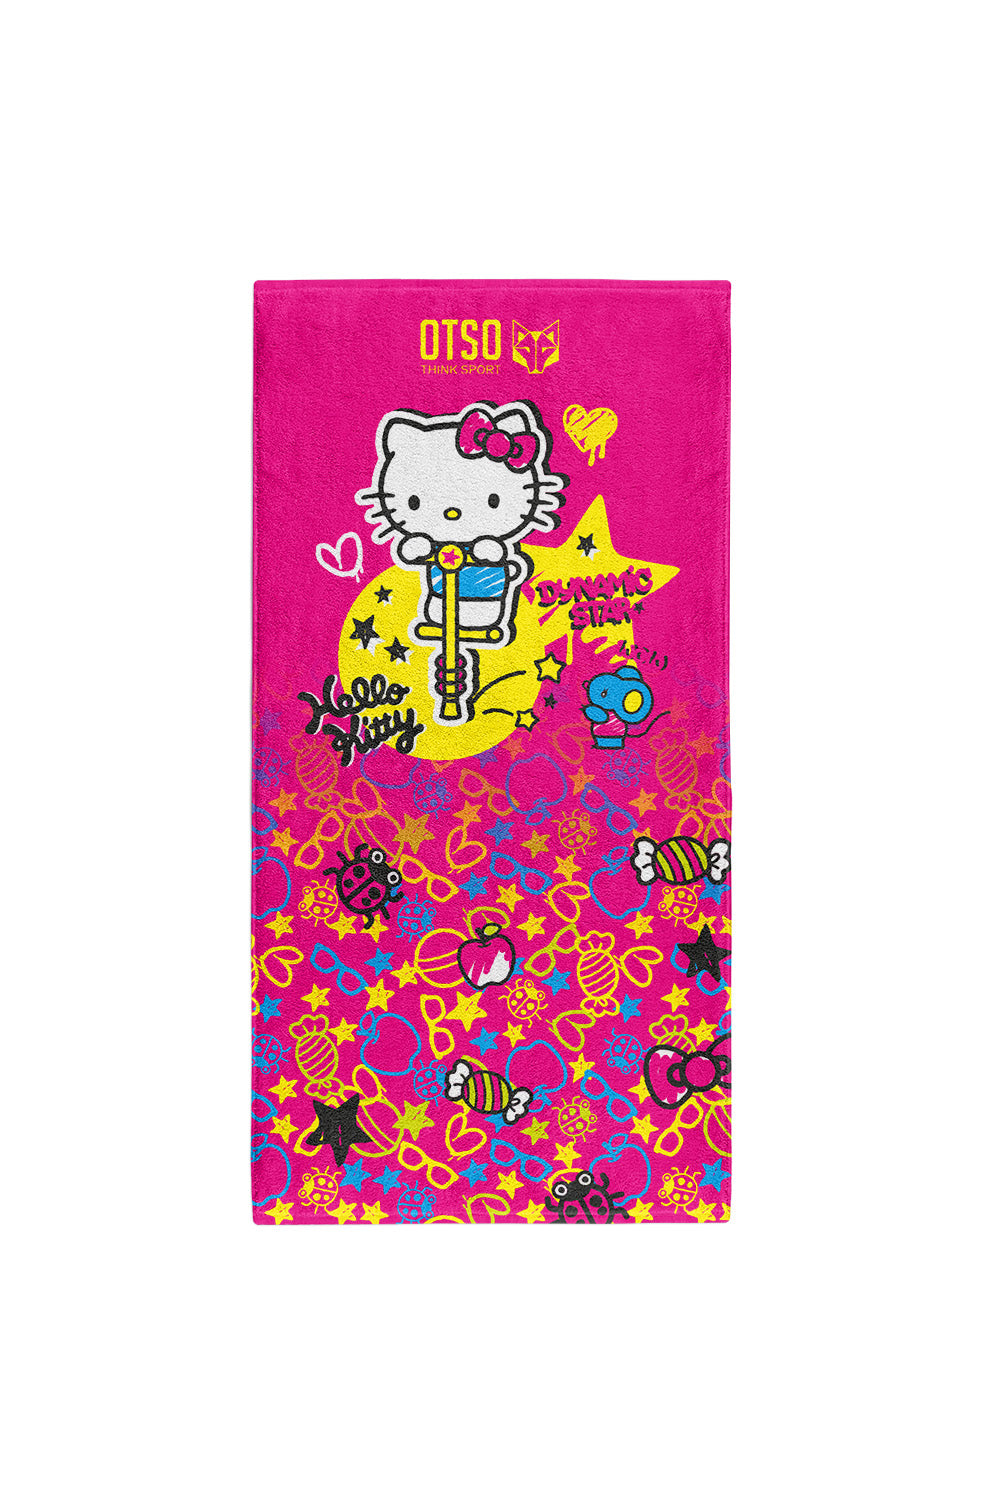 Asciugamano in microfibra - Hello Kitty Sparkle